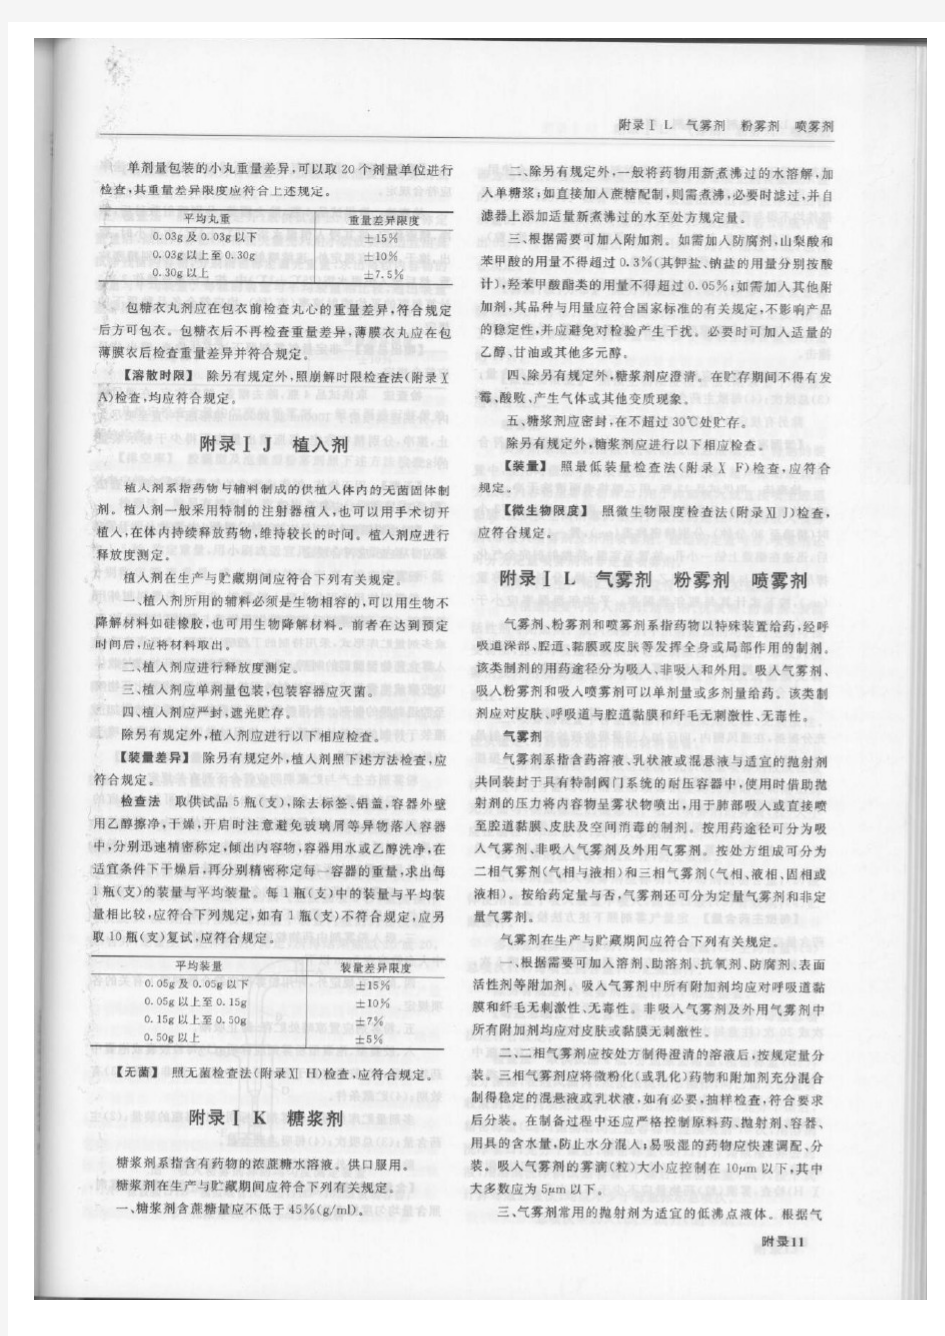 中国药典2005年版(二部)附录ⅠL气雾剂、粉雾剂、喷雾剂